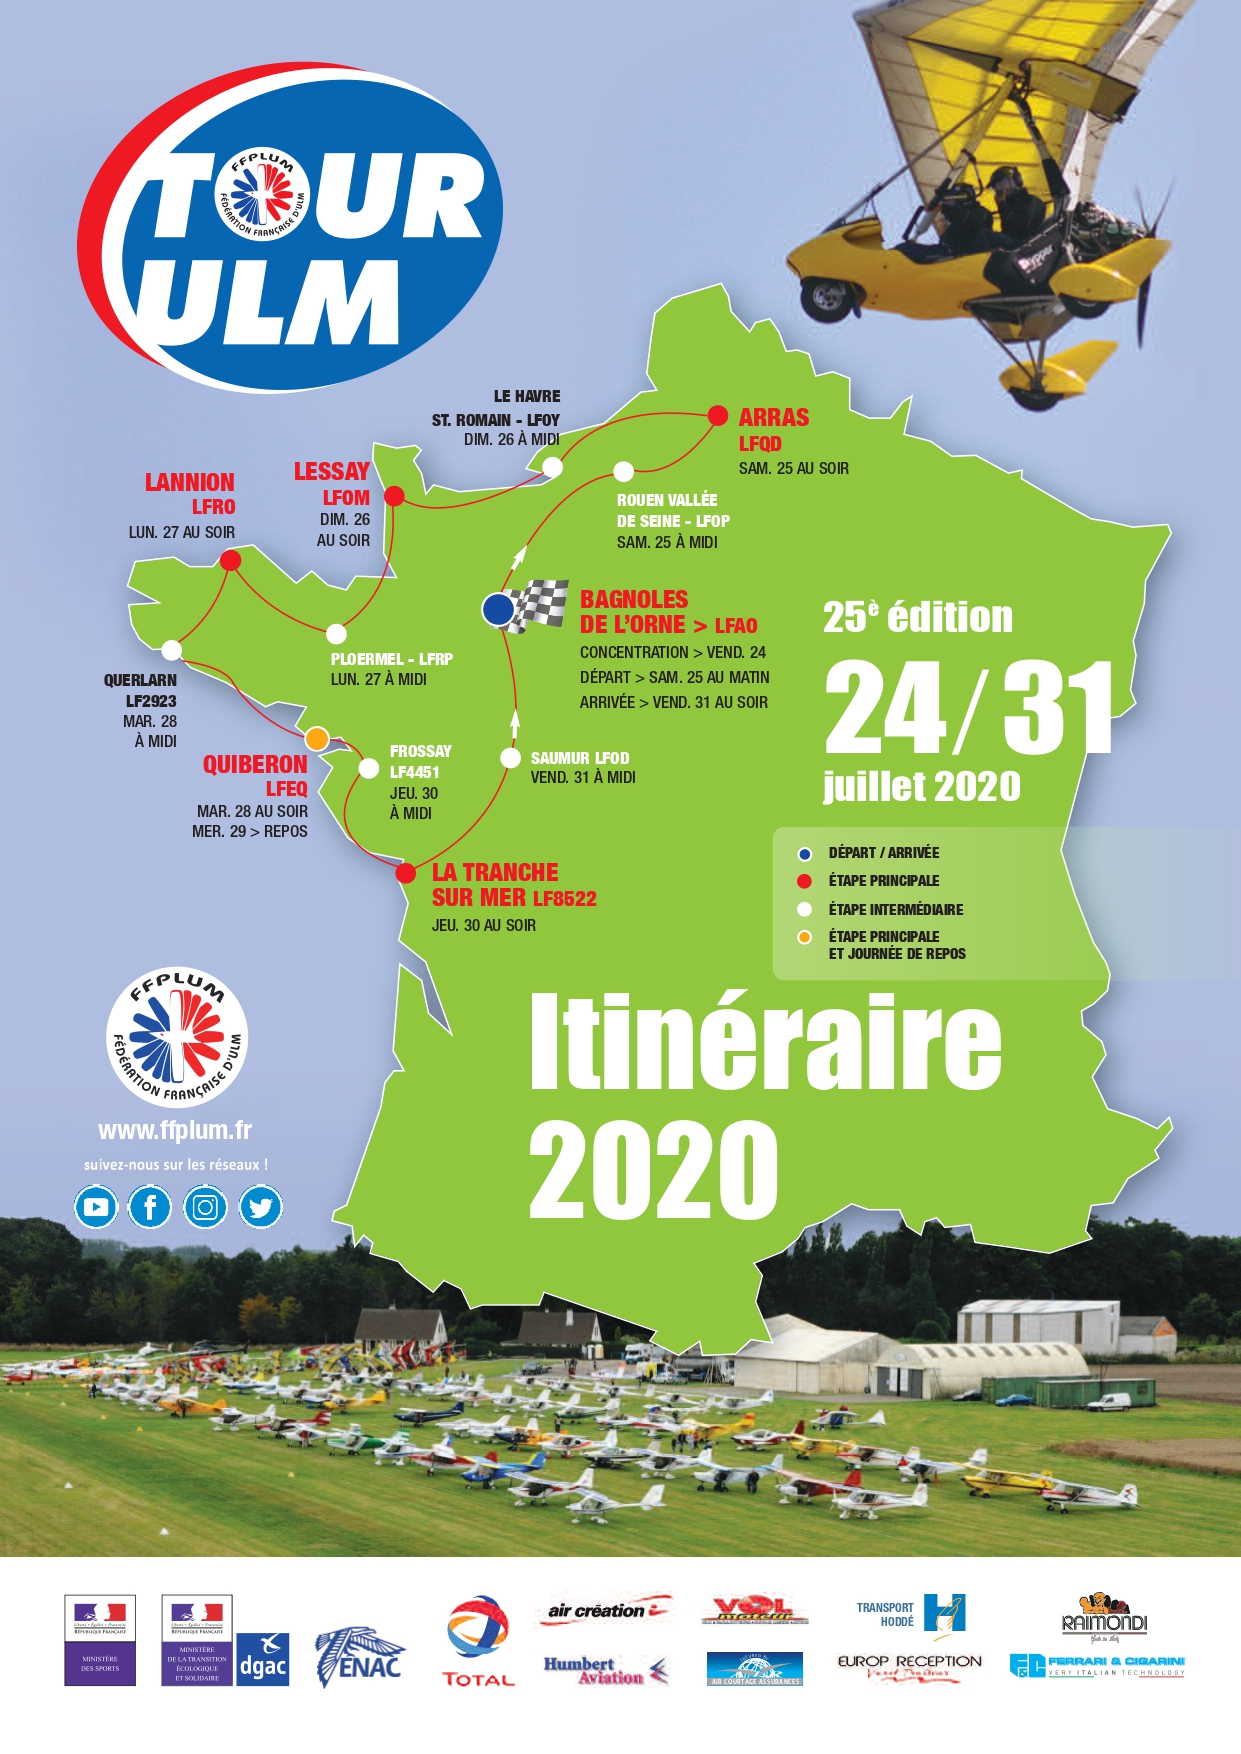 Le blog du Tour ULM 2020